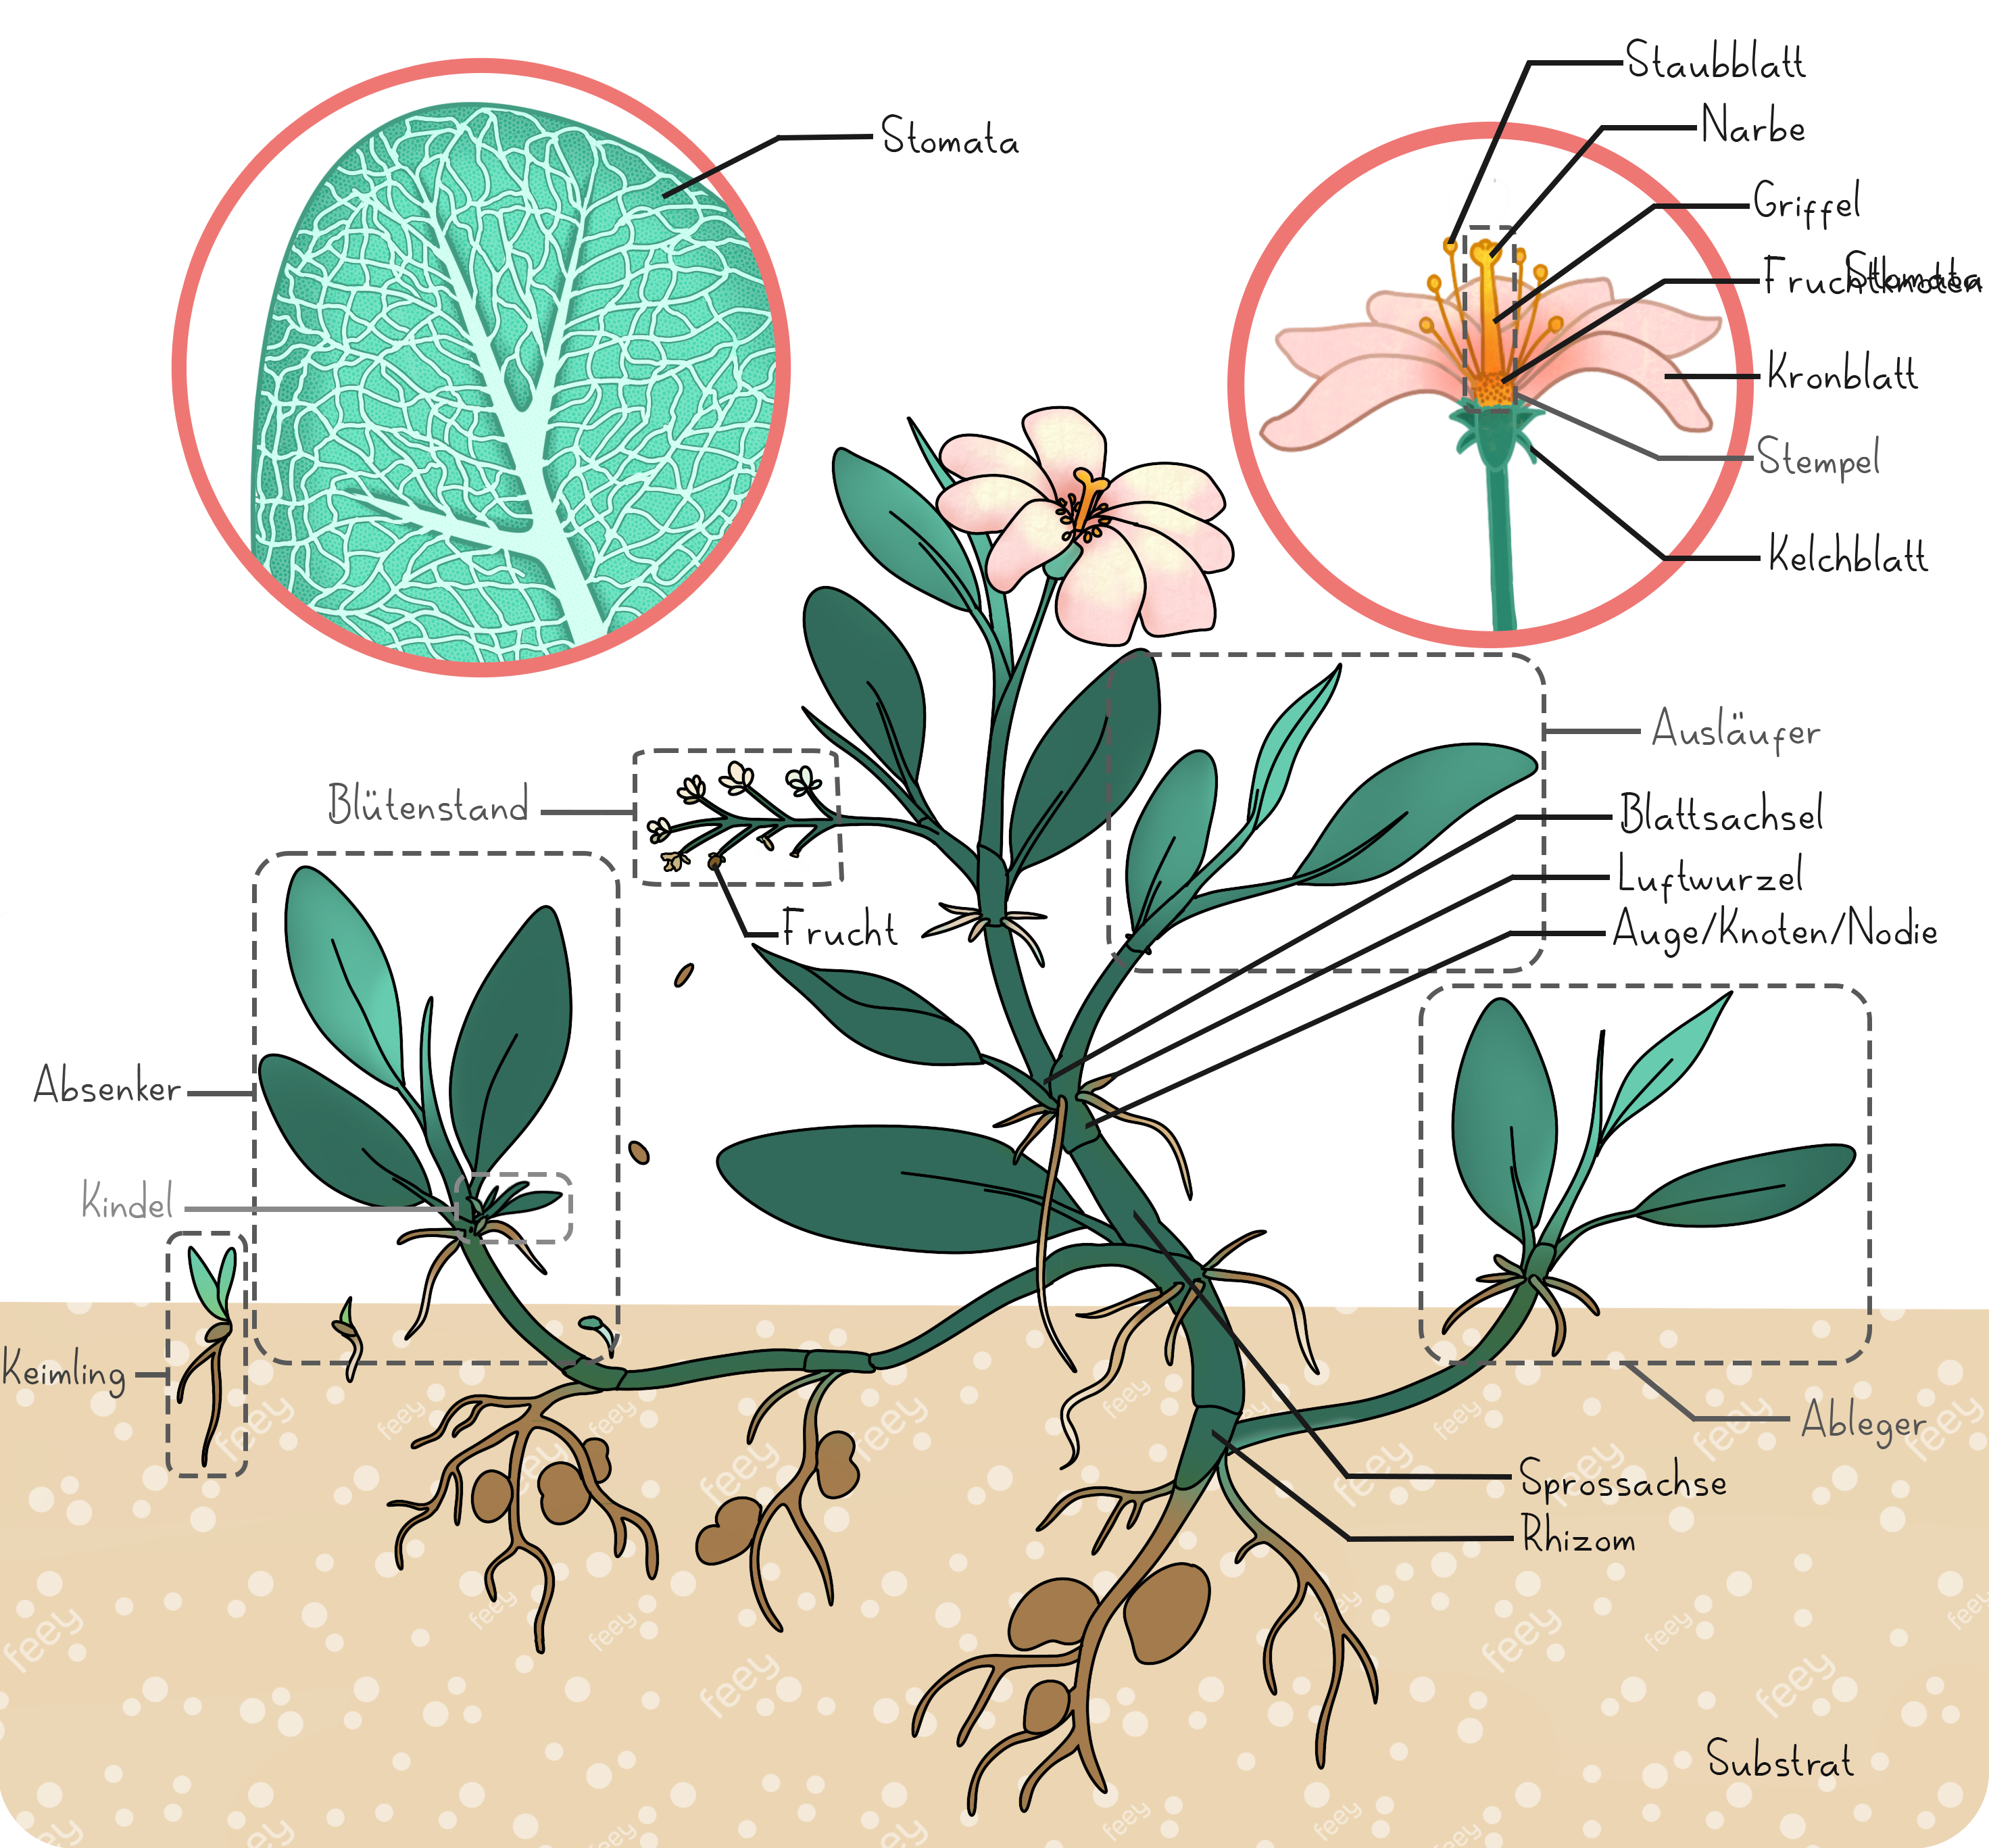 Illustration einer Pflanze mit Wurzelsystem, Trieben, Blättern und einer Blüte